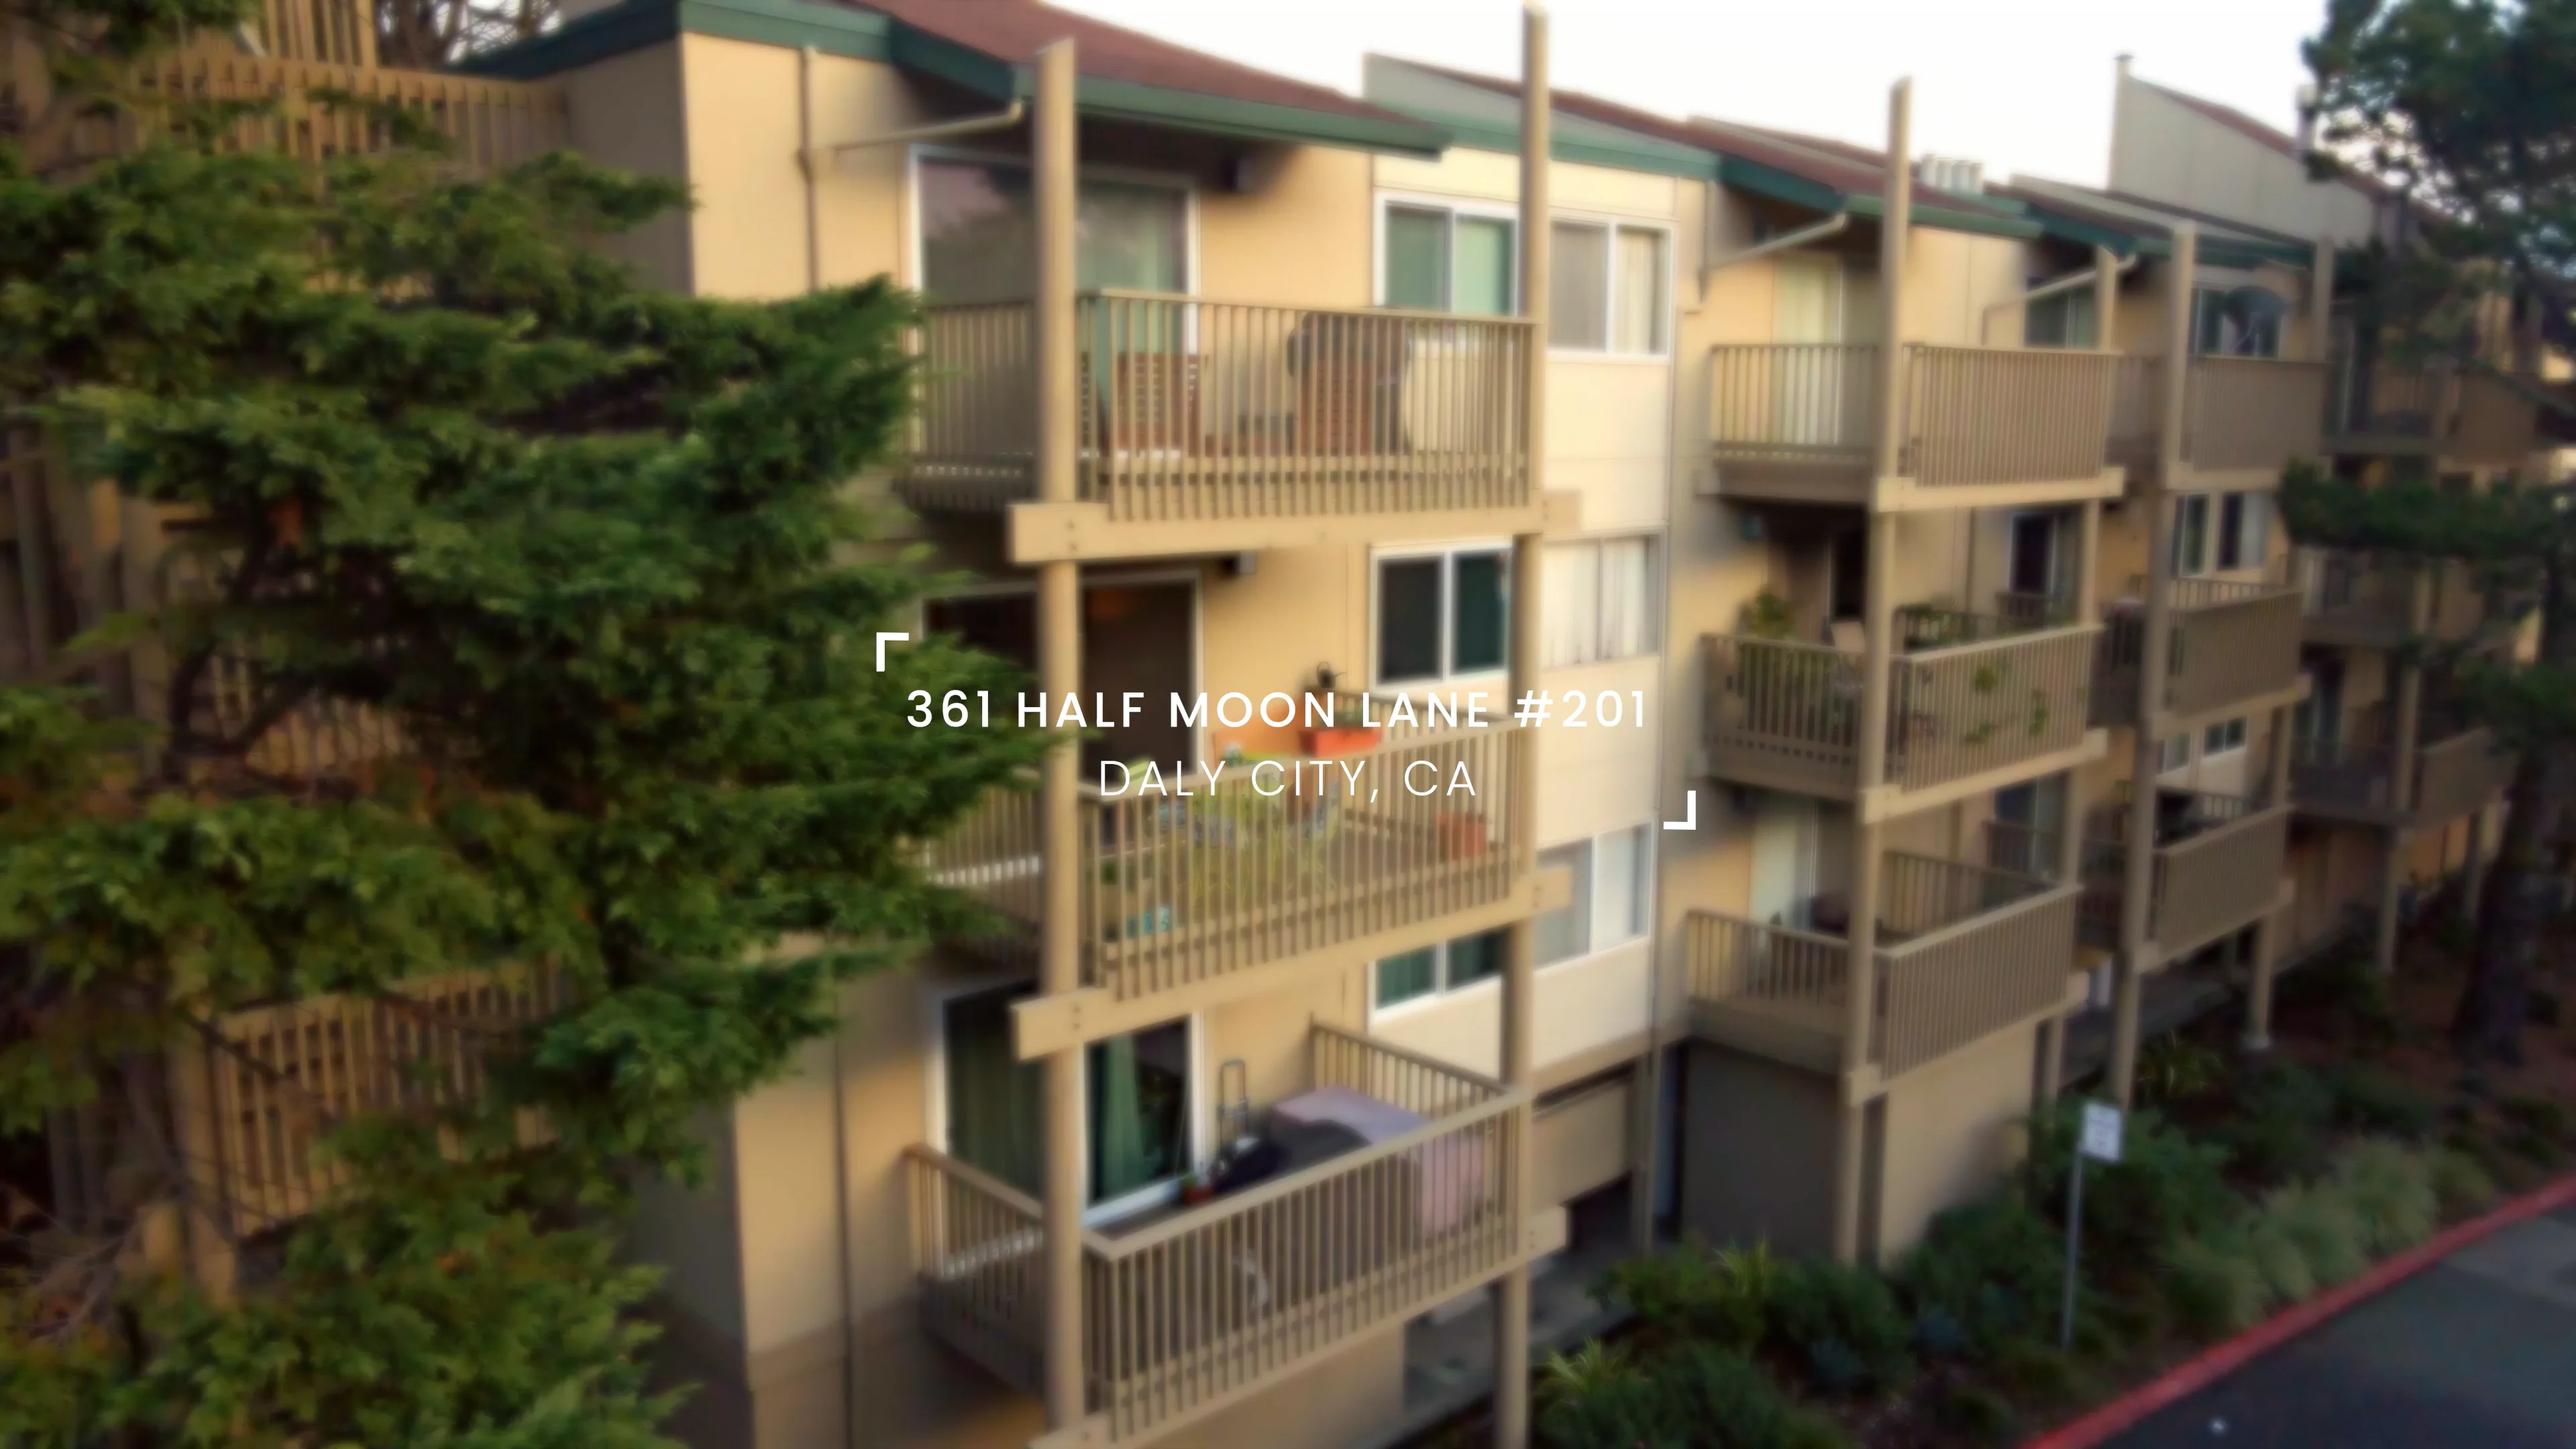 361 Half Moon Ln, #201 Daly City, CA, Anthony Navarro